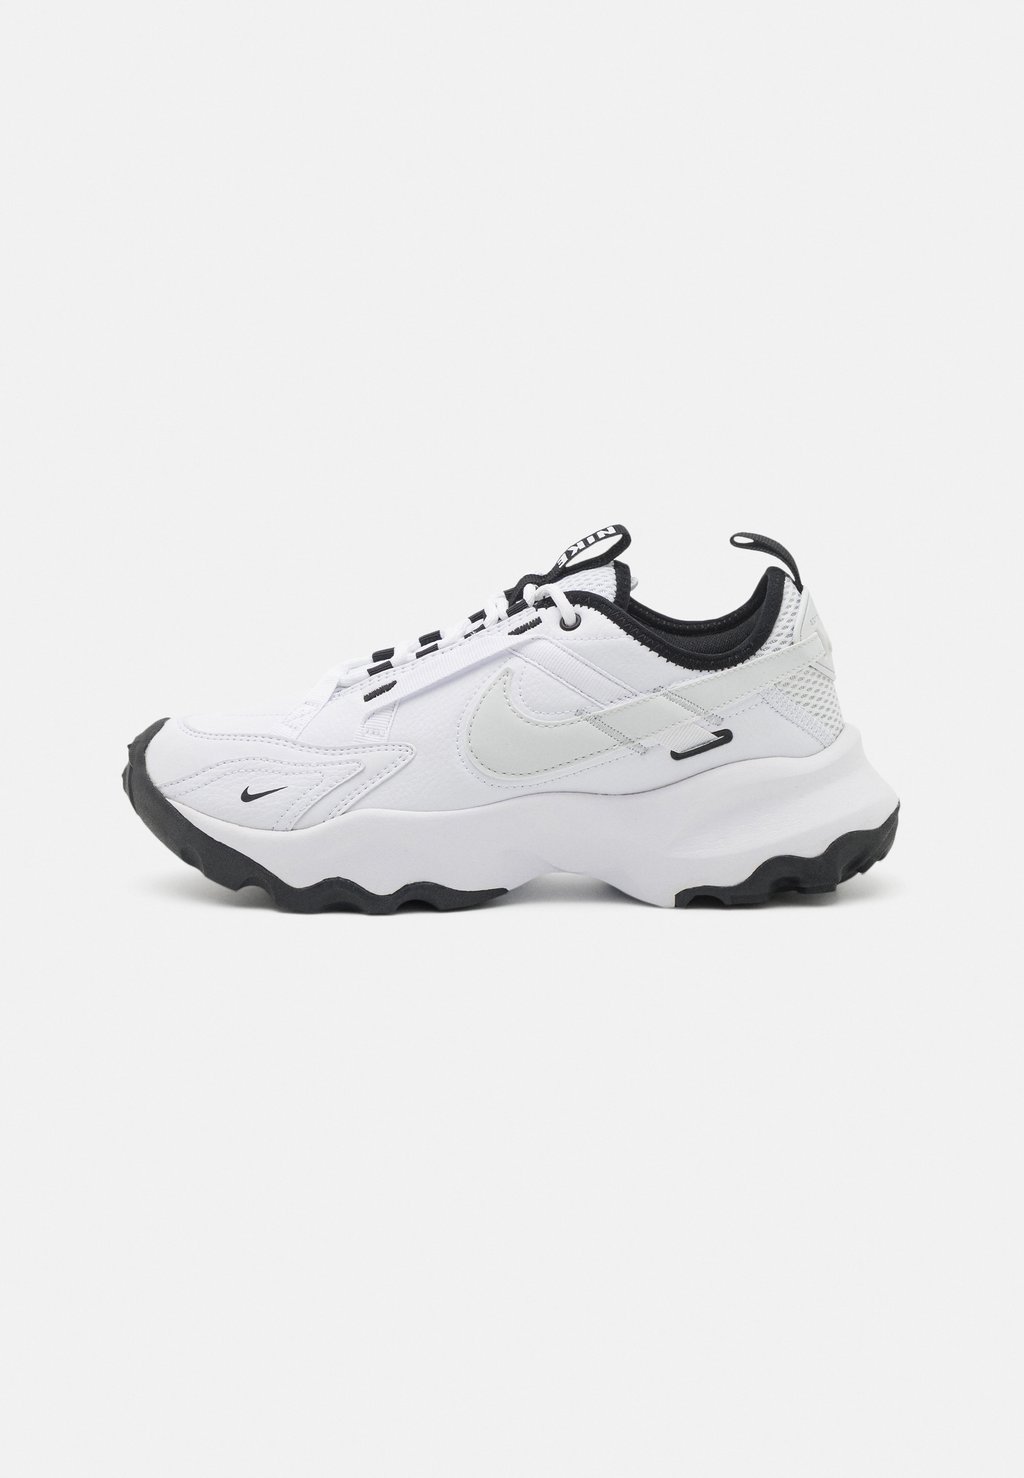 Низкие кроссовки TC 7900 Nike, белый/фотонная пыль/черный толстовка nike железно серый фотонная пыль